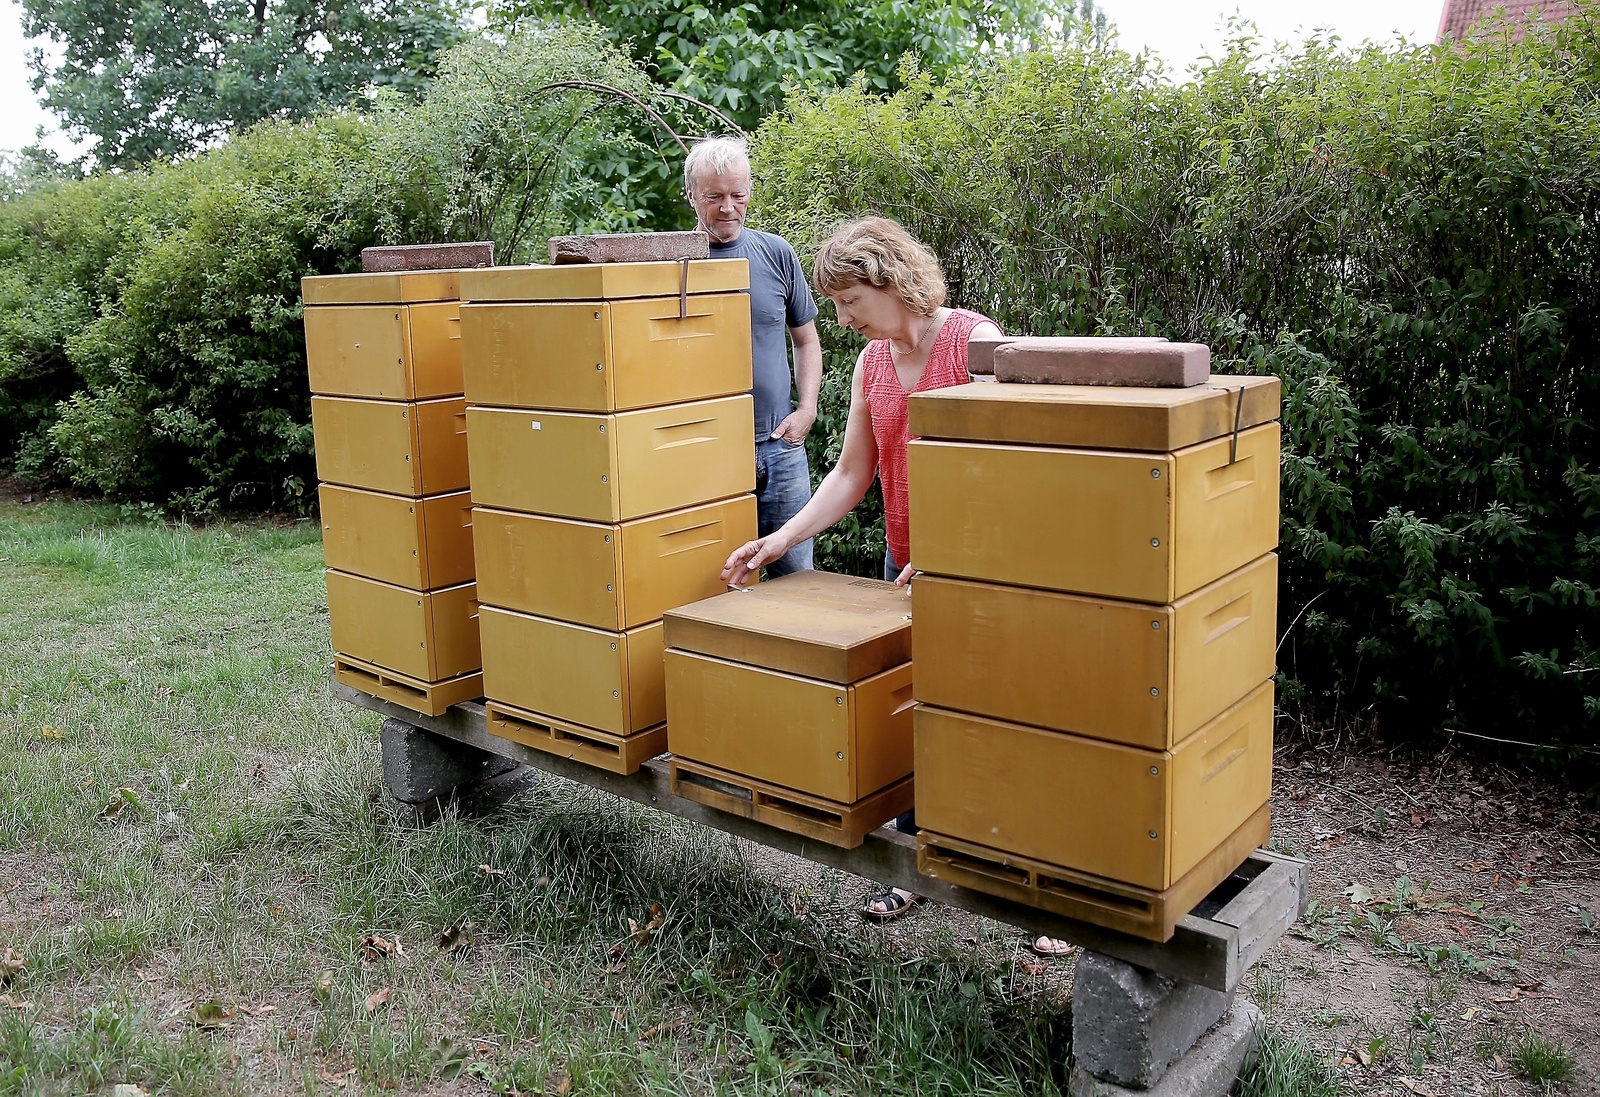 Bo Arvidsson och Stella Arvidsson har en biodling i trädgården sedan tre år tillbaka. I år har de slungat ungefär 30 kilo honung som de säljer till vänner och bekanta. 
FOTO: STEFAN SANDSTRÖM